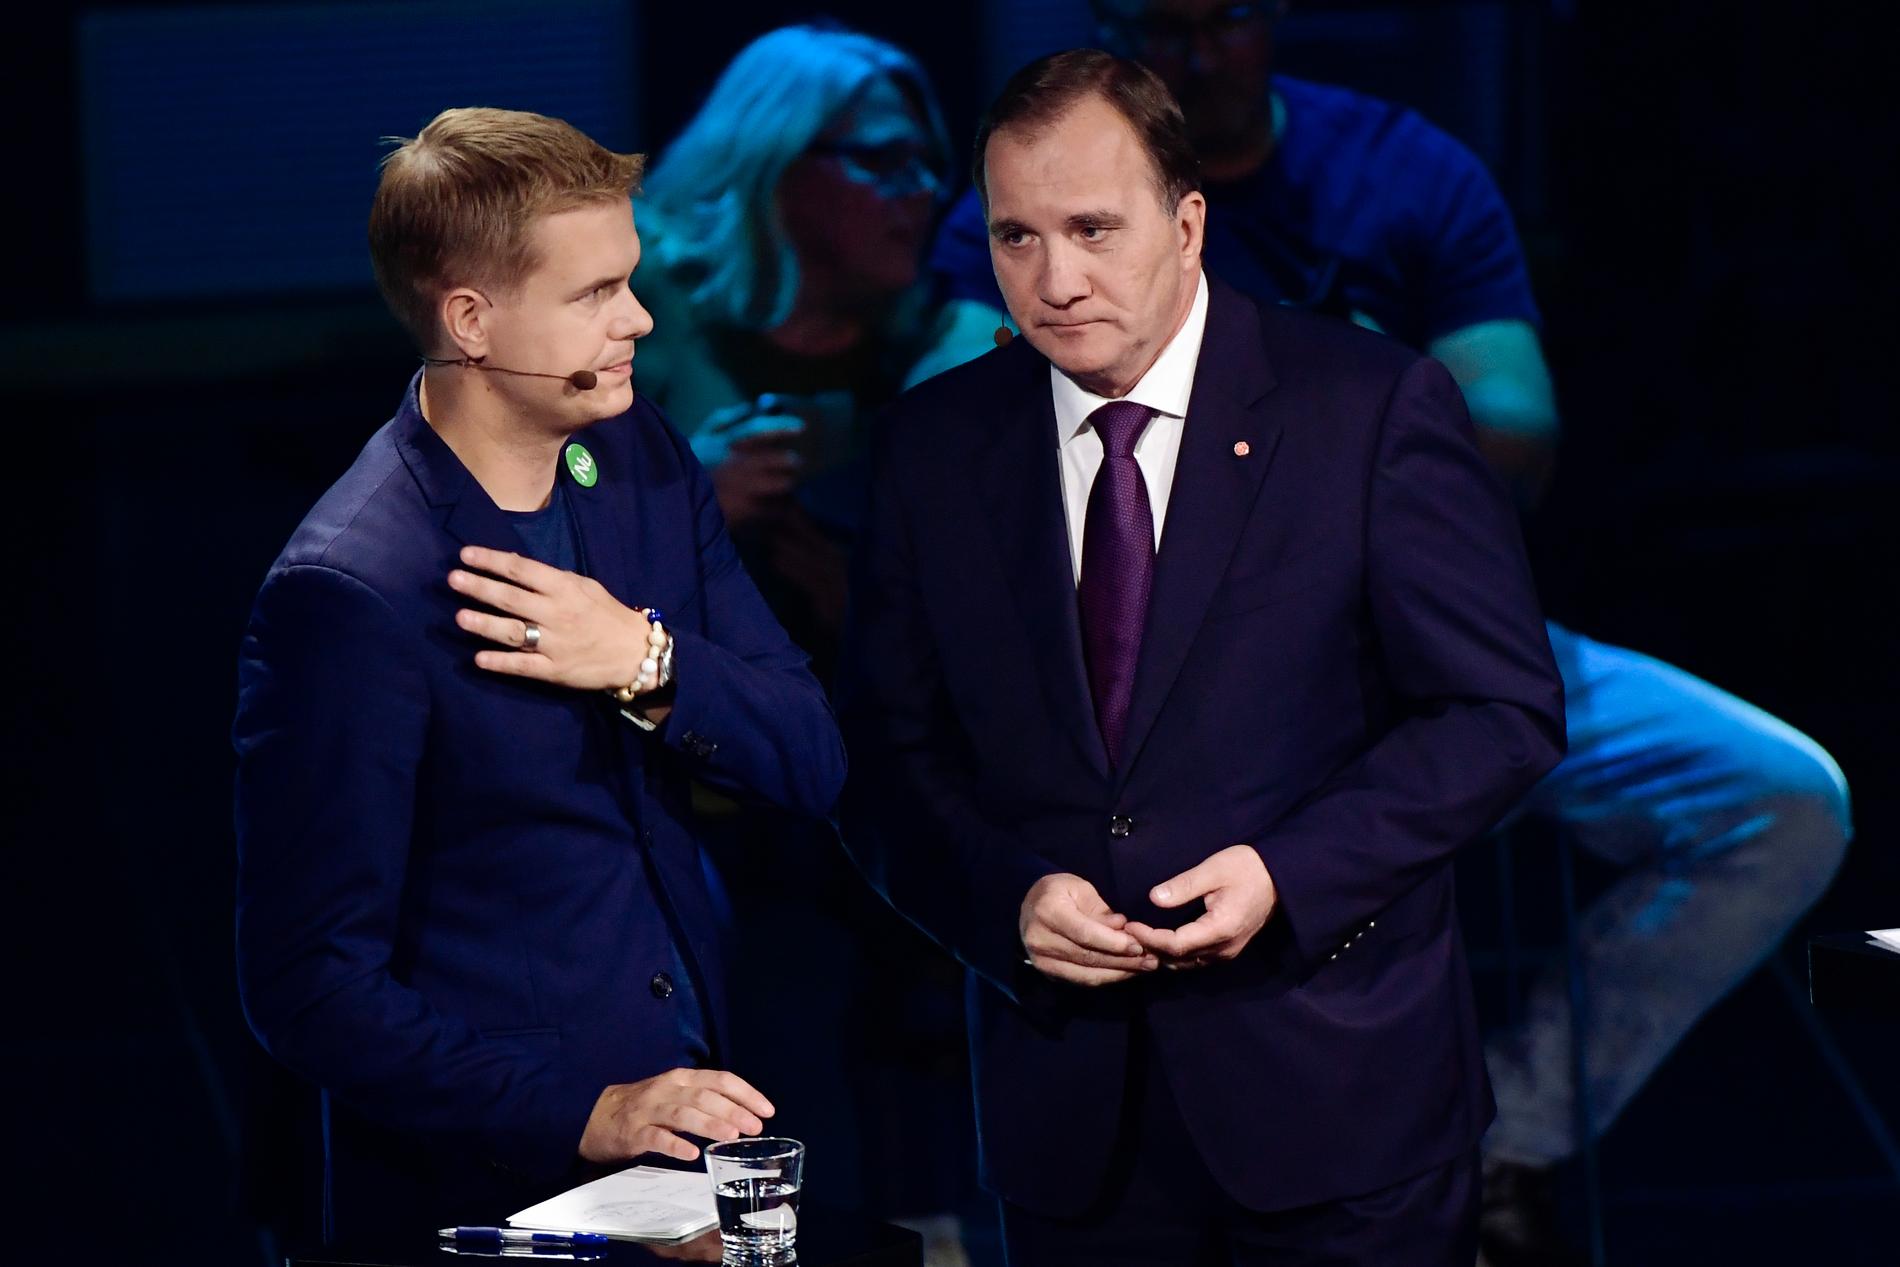 Miljöpartiets språkrör Gustav Fridolin och Socialdemokraternas partiledare Stefan Löfven under TV4:s partiledardebatt som sändes från Gävlehovshallen.